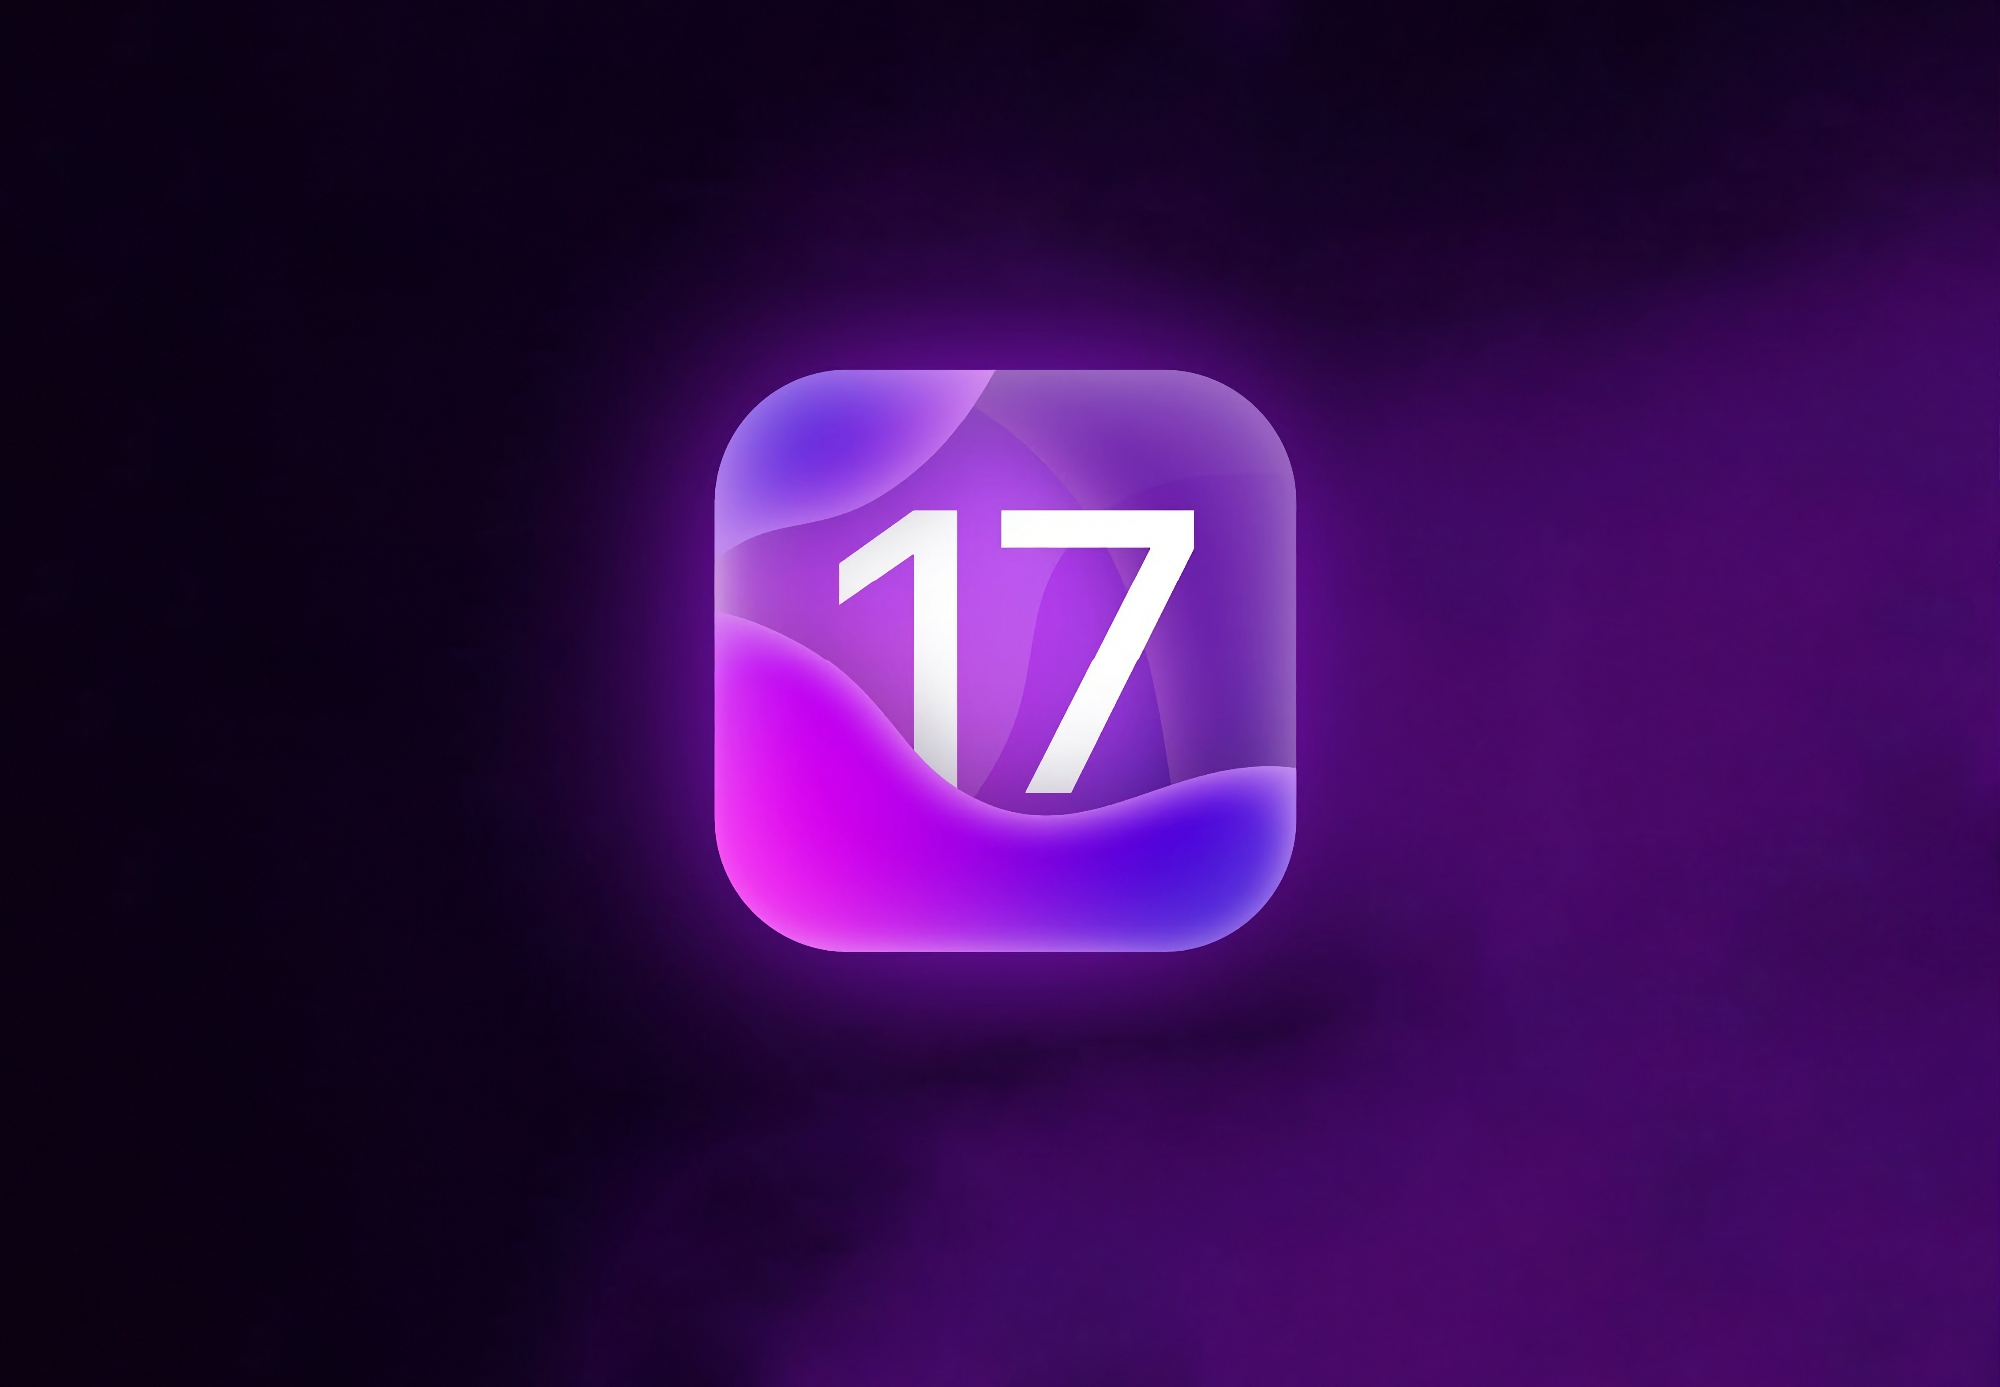 W sieci pojawiły się szczegóły dotyczące iOS 17: wygląd jak iOS 16, poprawiona stabilność i osobna aplikacja do obsługi zestawów słuchawkowych AR/VR